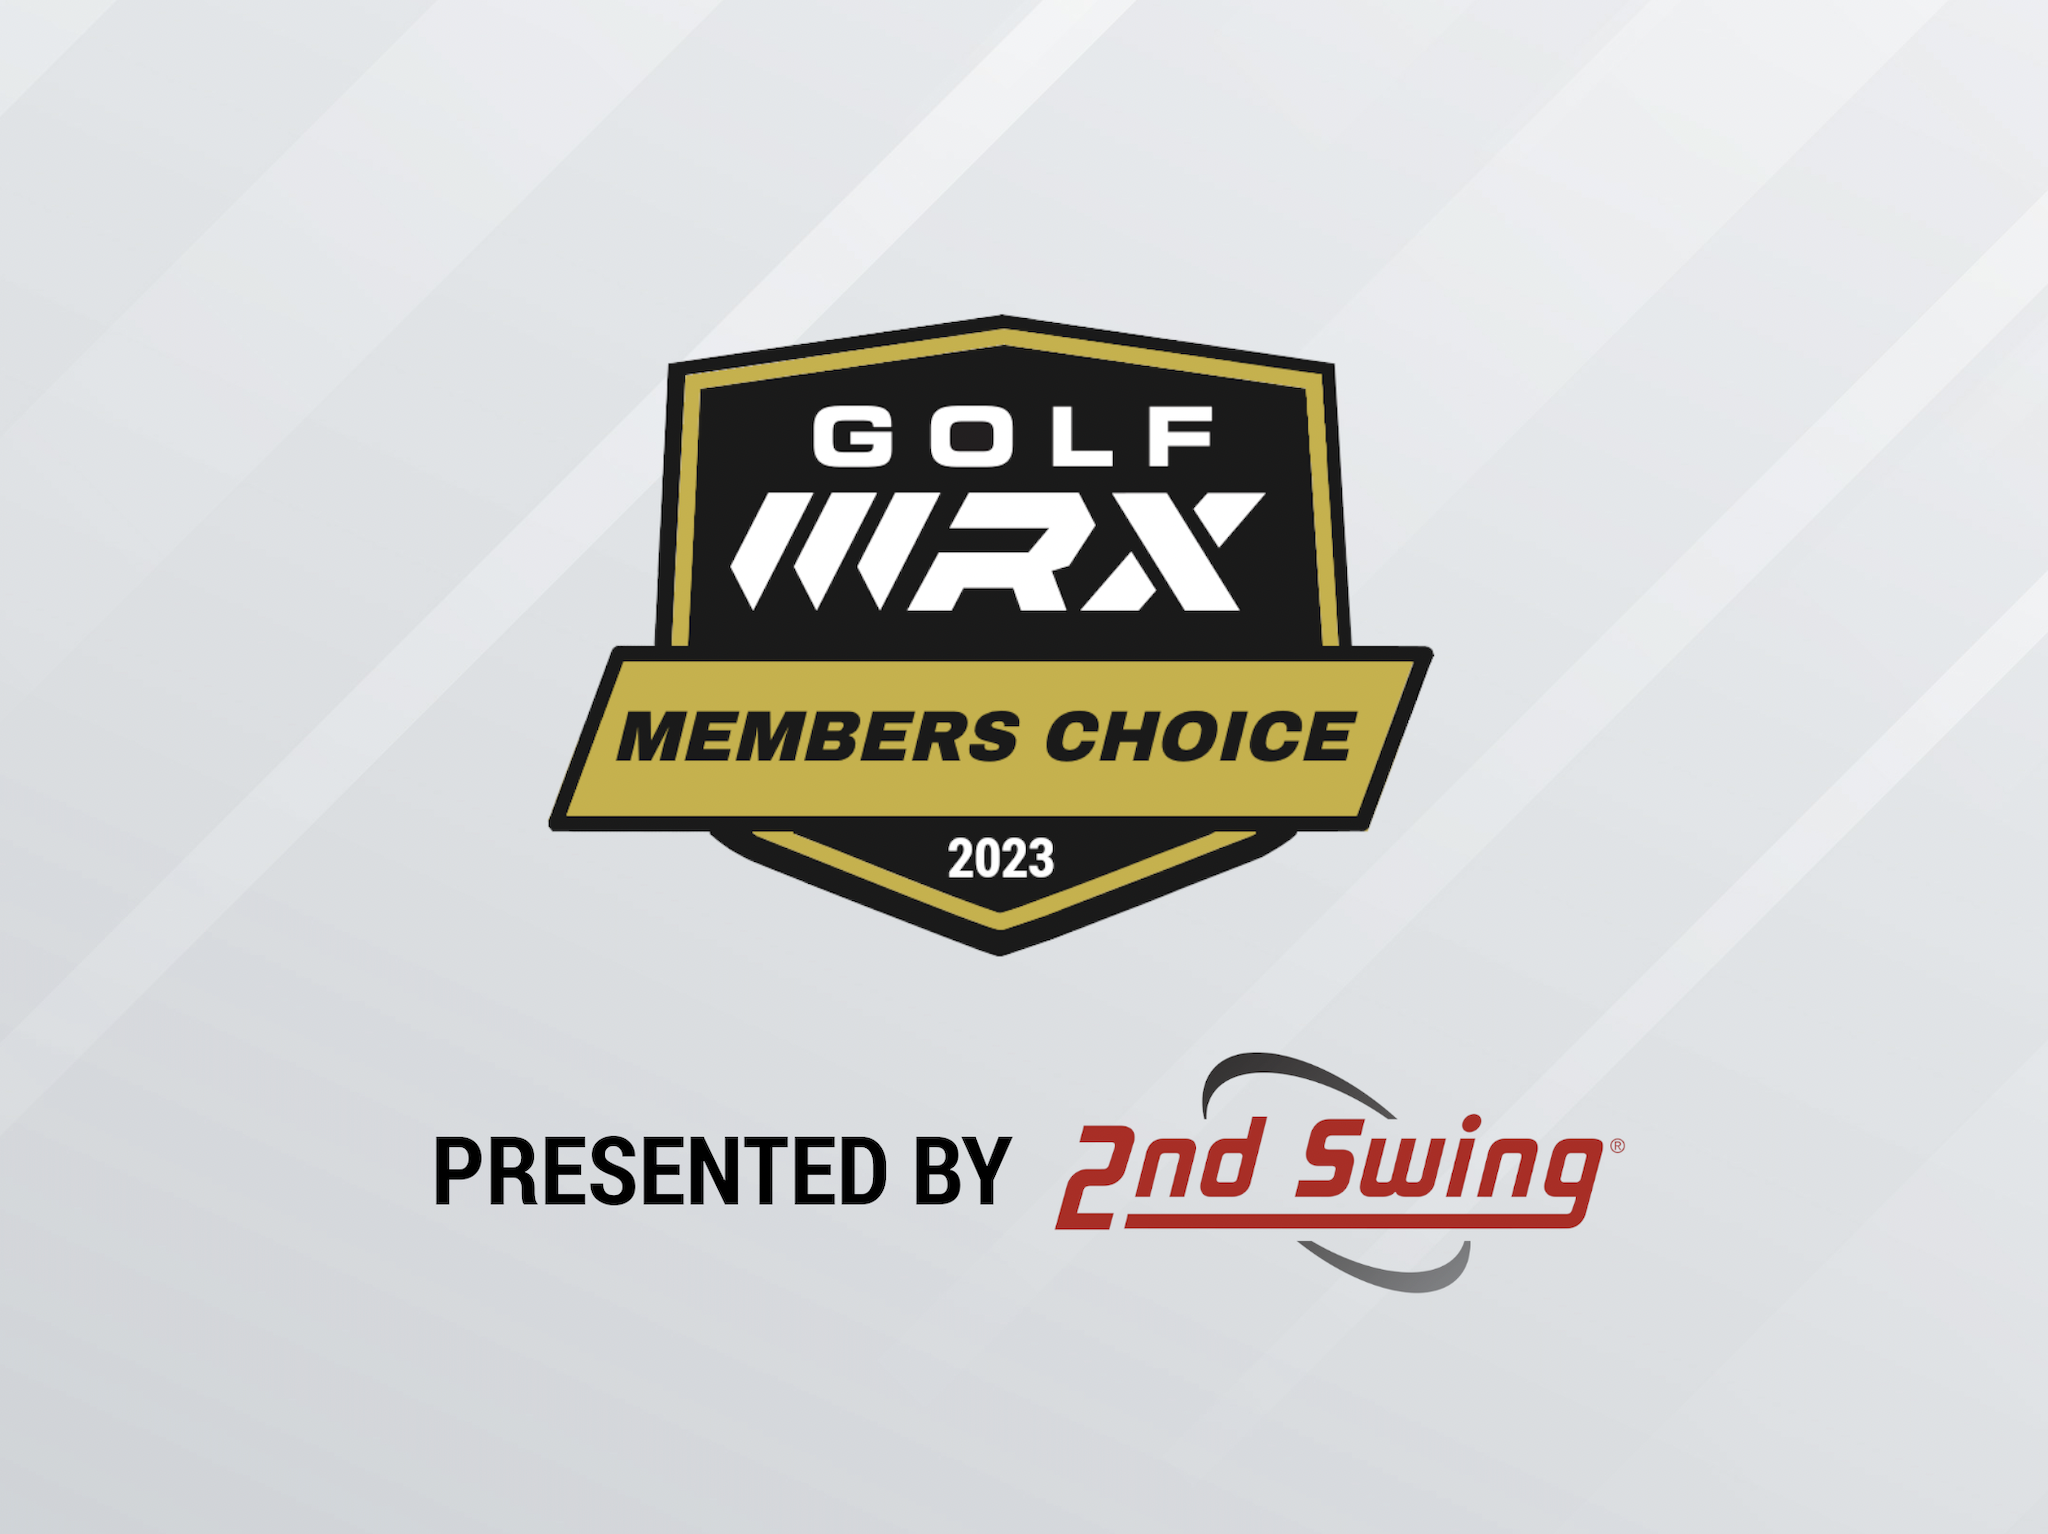 GolfWRX Members Choice presented by 2nd Swing: Best fairway wood 